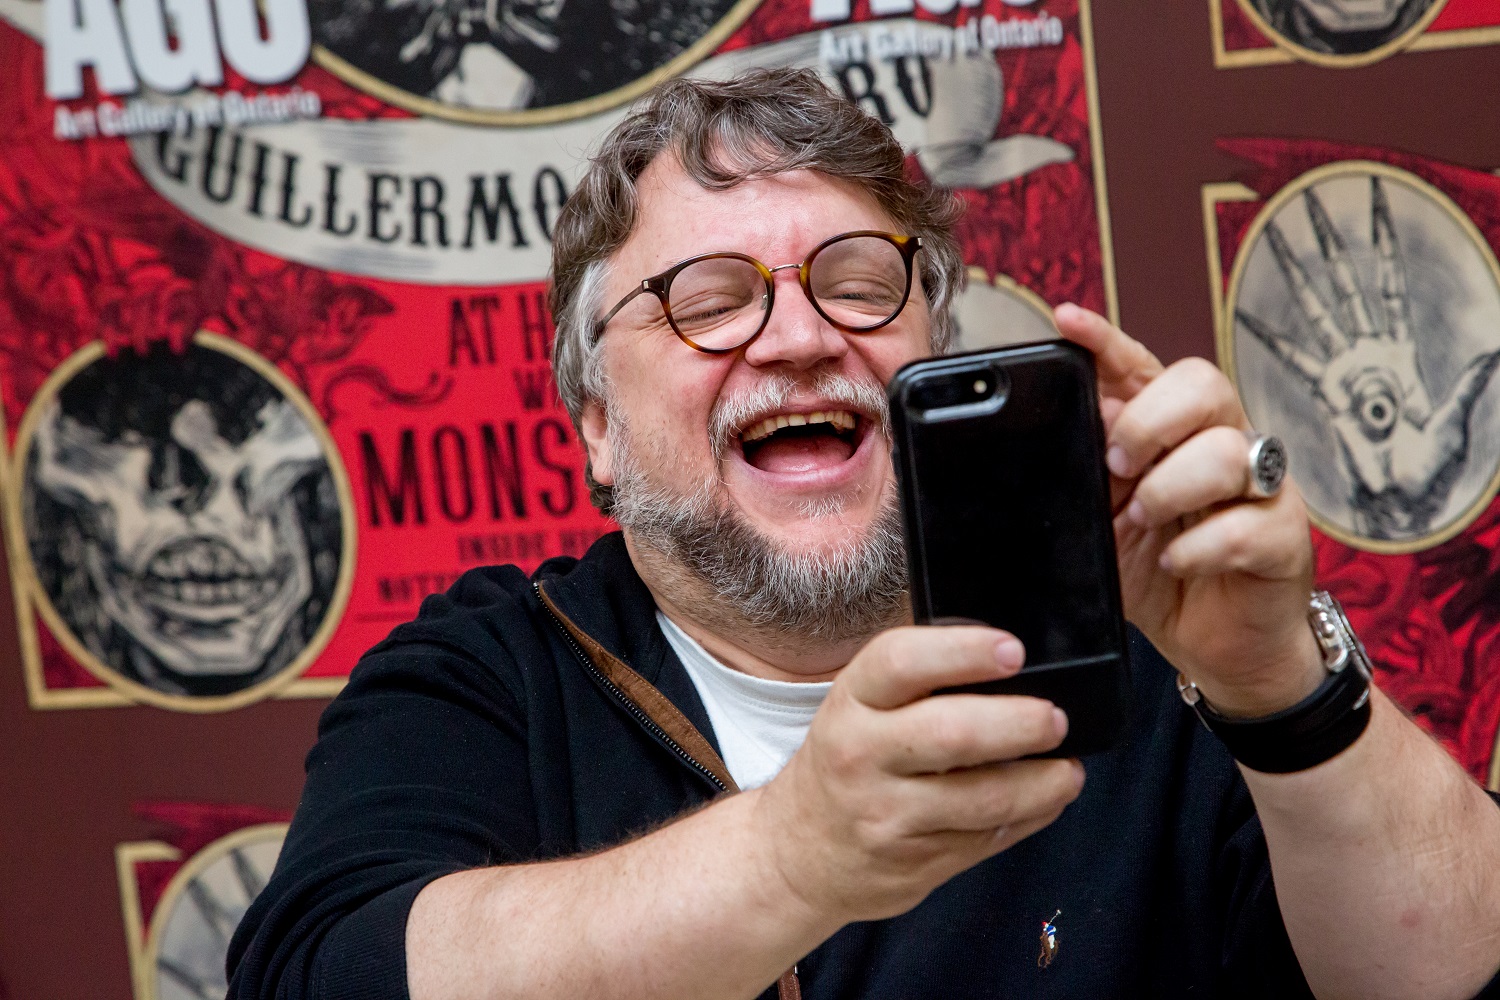 Guillermo del Toro taking a selfie